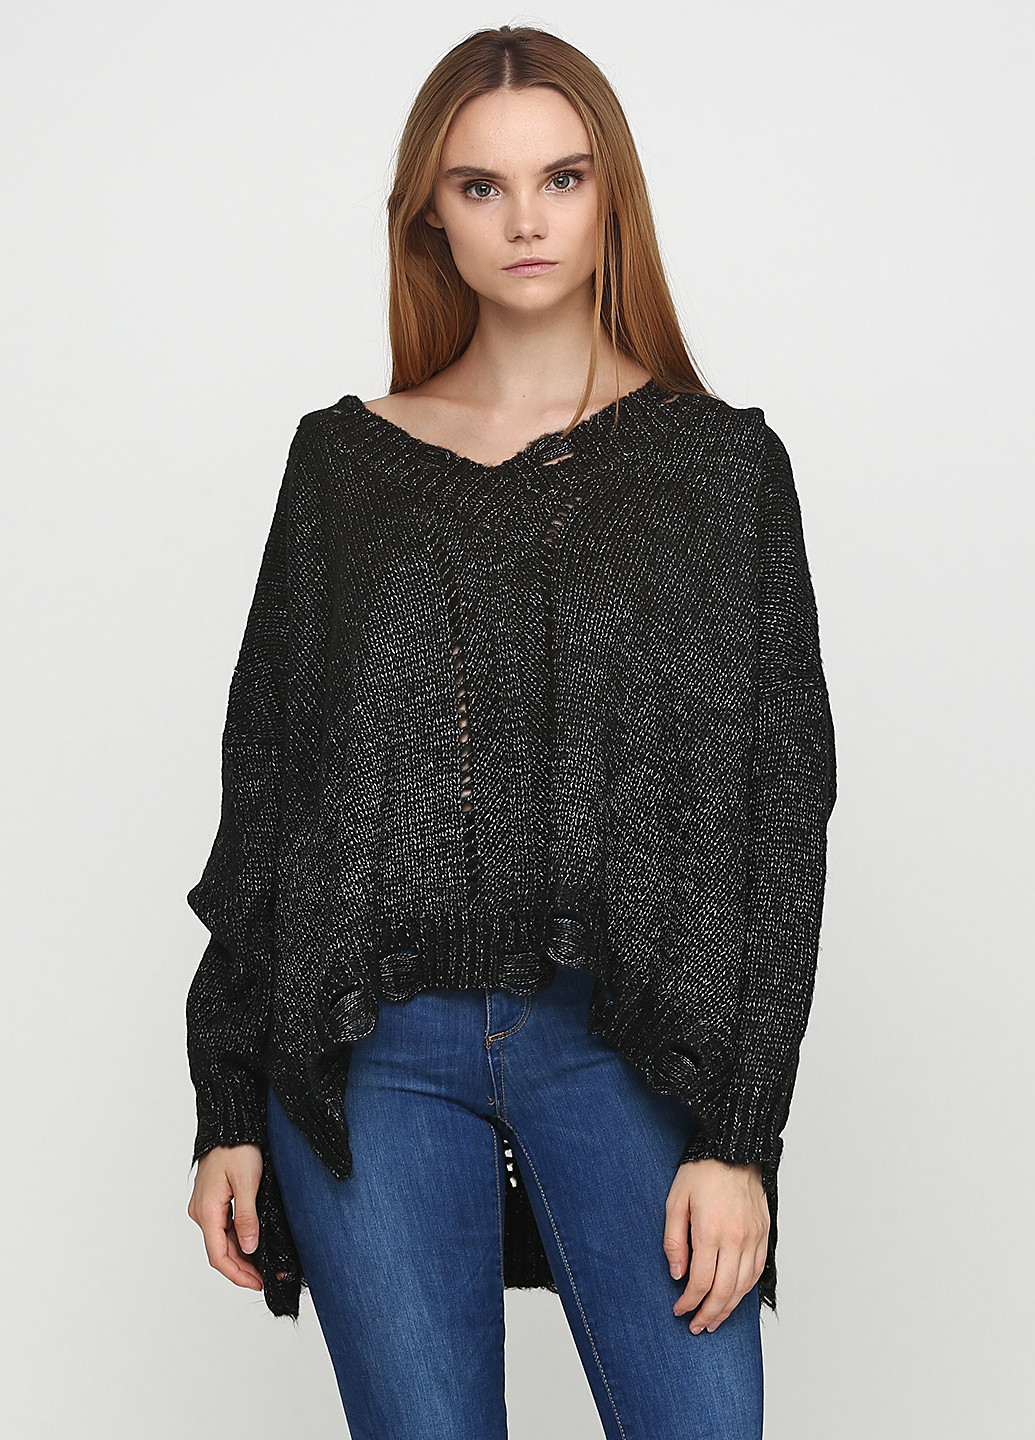 Черный зимний пуловер пуловер Zafferano